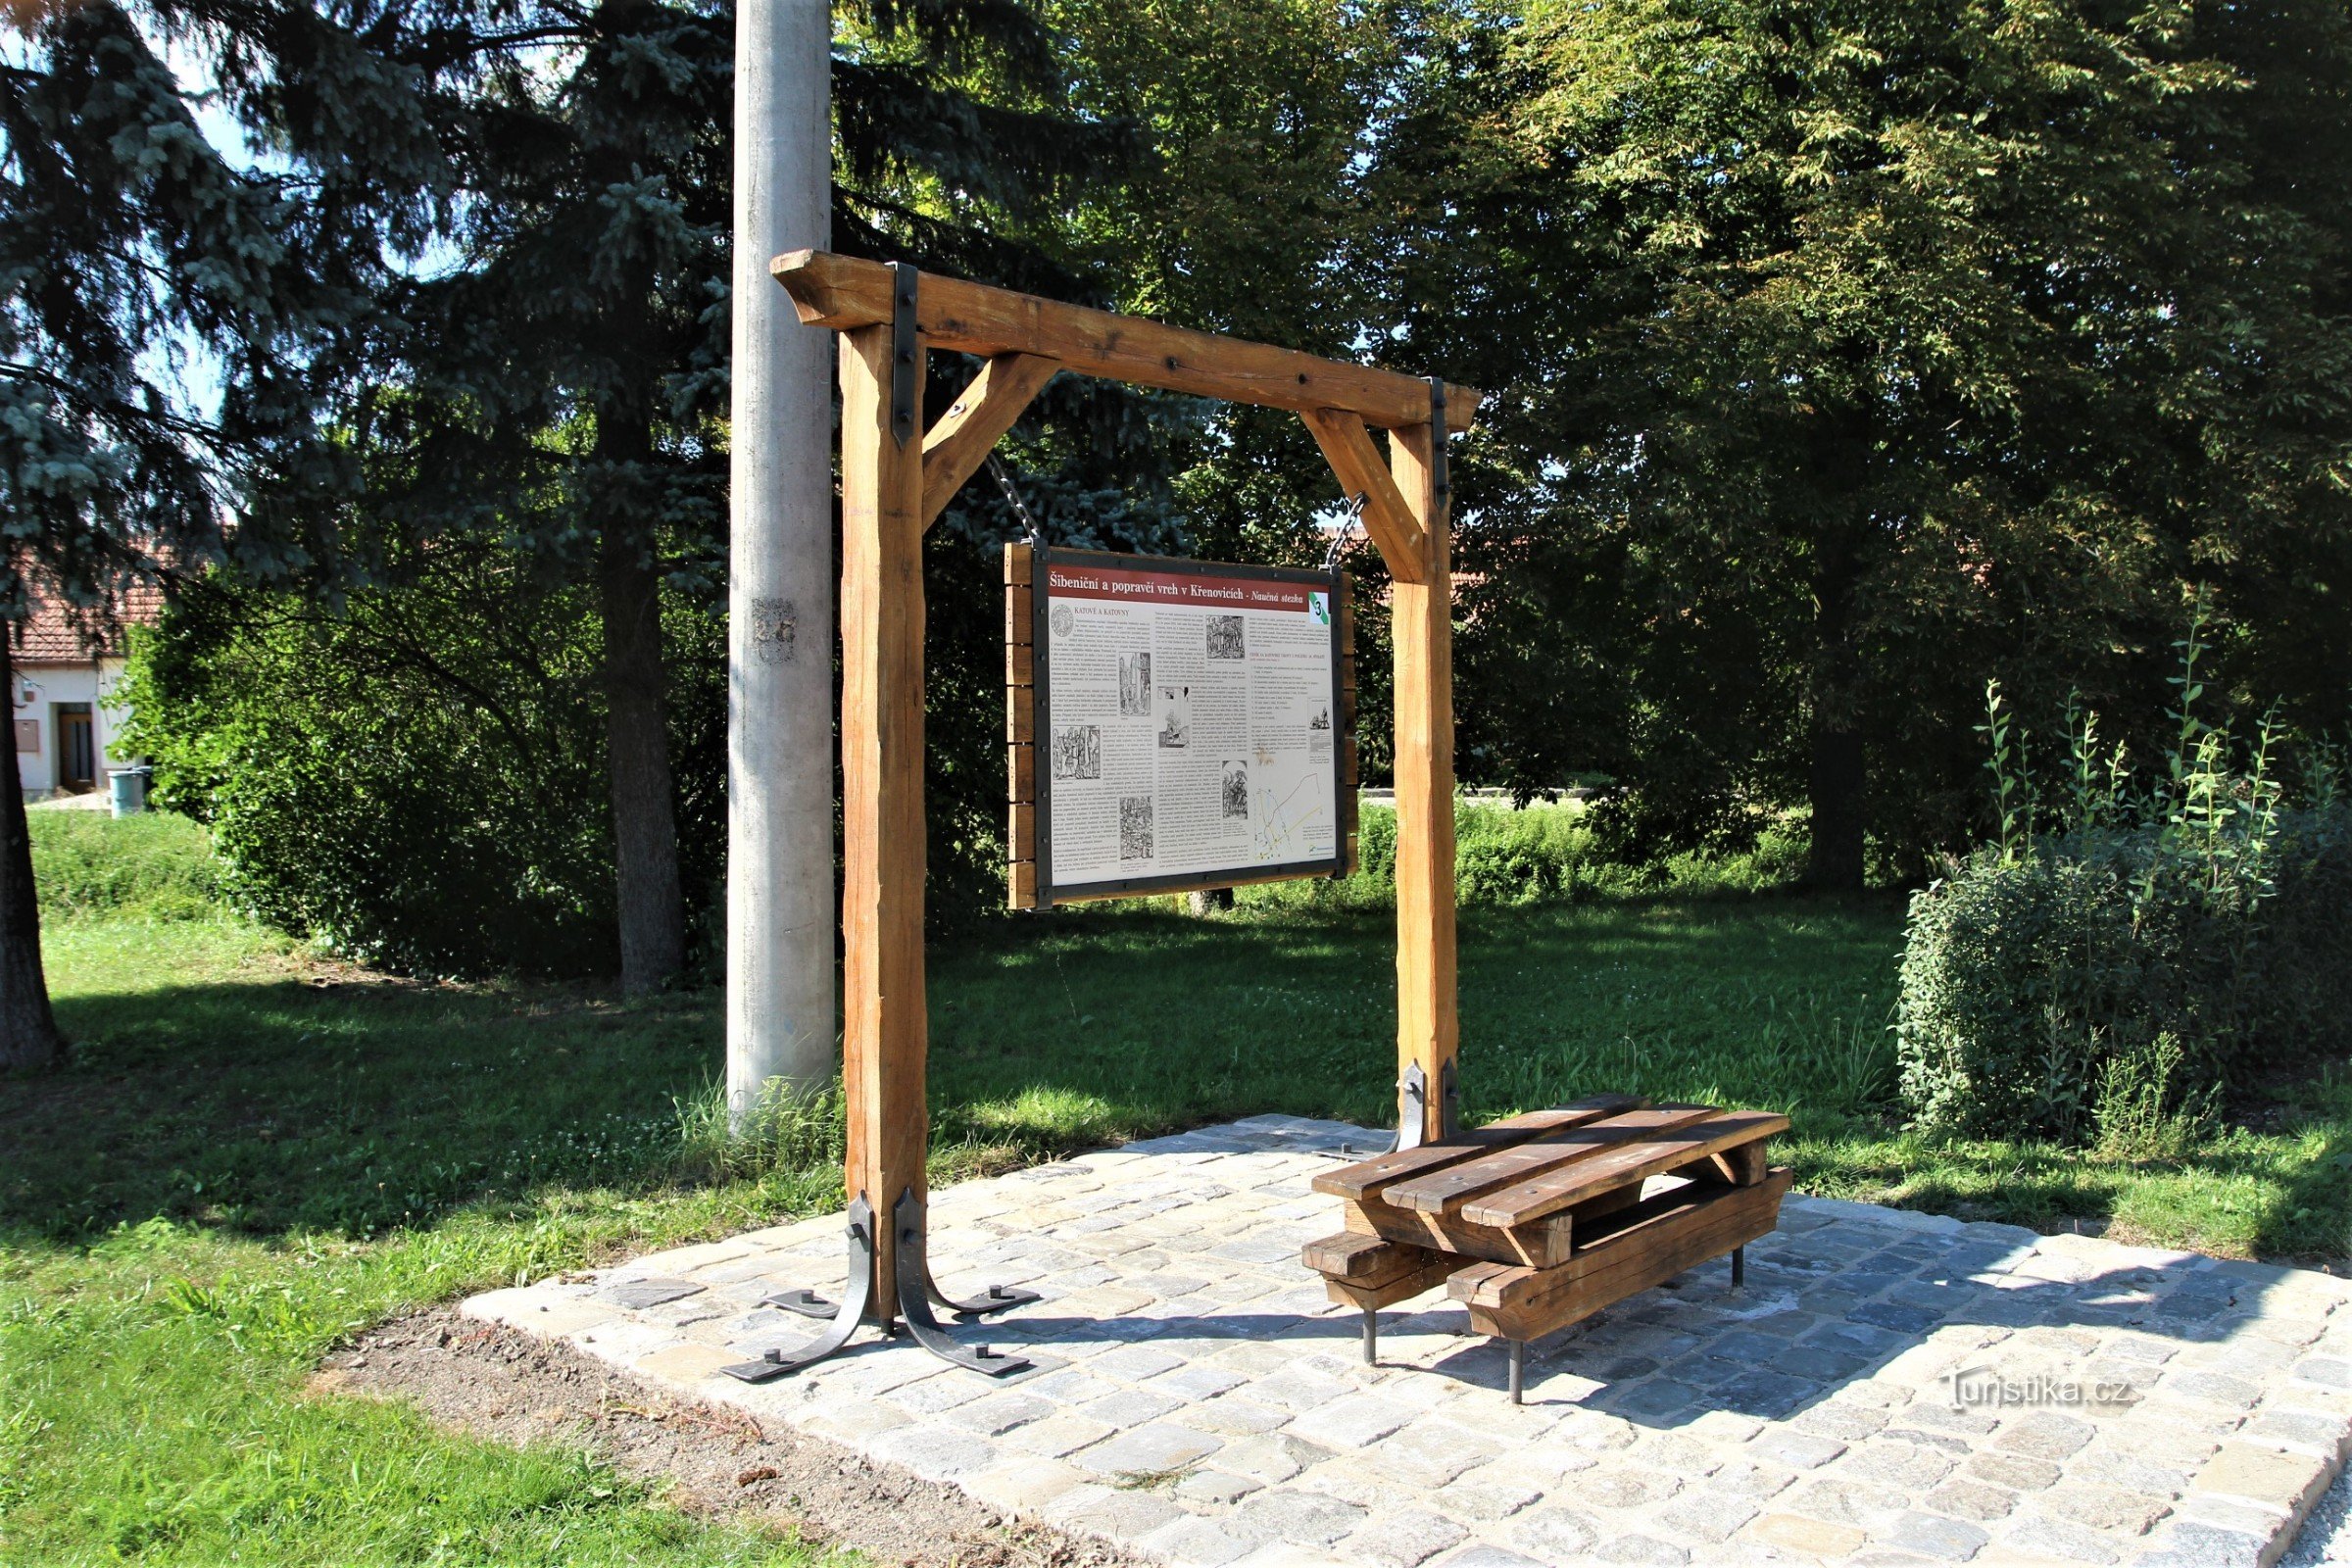 Le troisième arrêt du sentier didactique se trouve au début de la rue Mlýnská